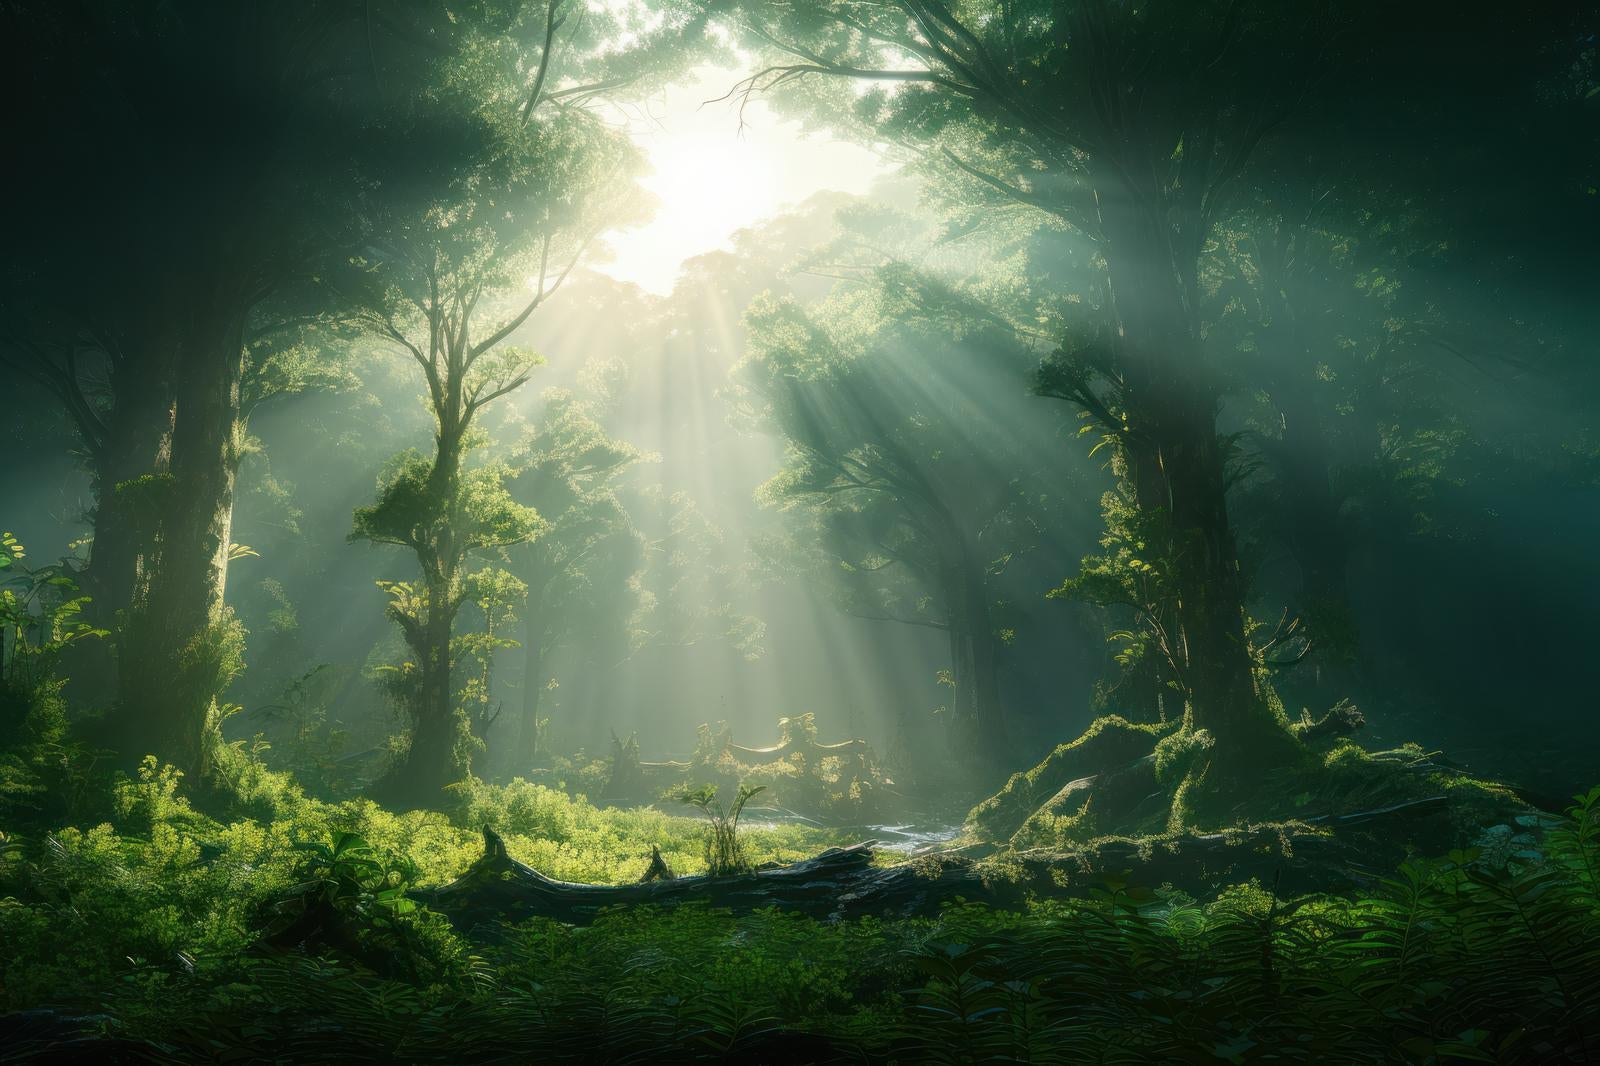 「薄明光線の舞 森林が呼吸する静寂な朝」の写真